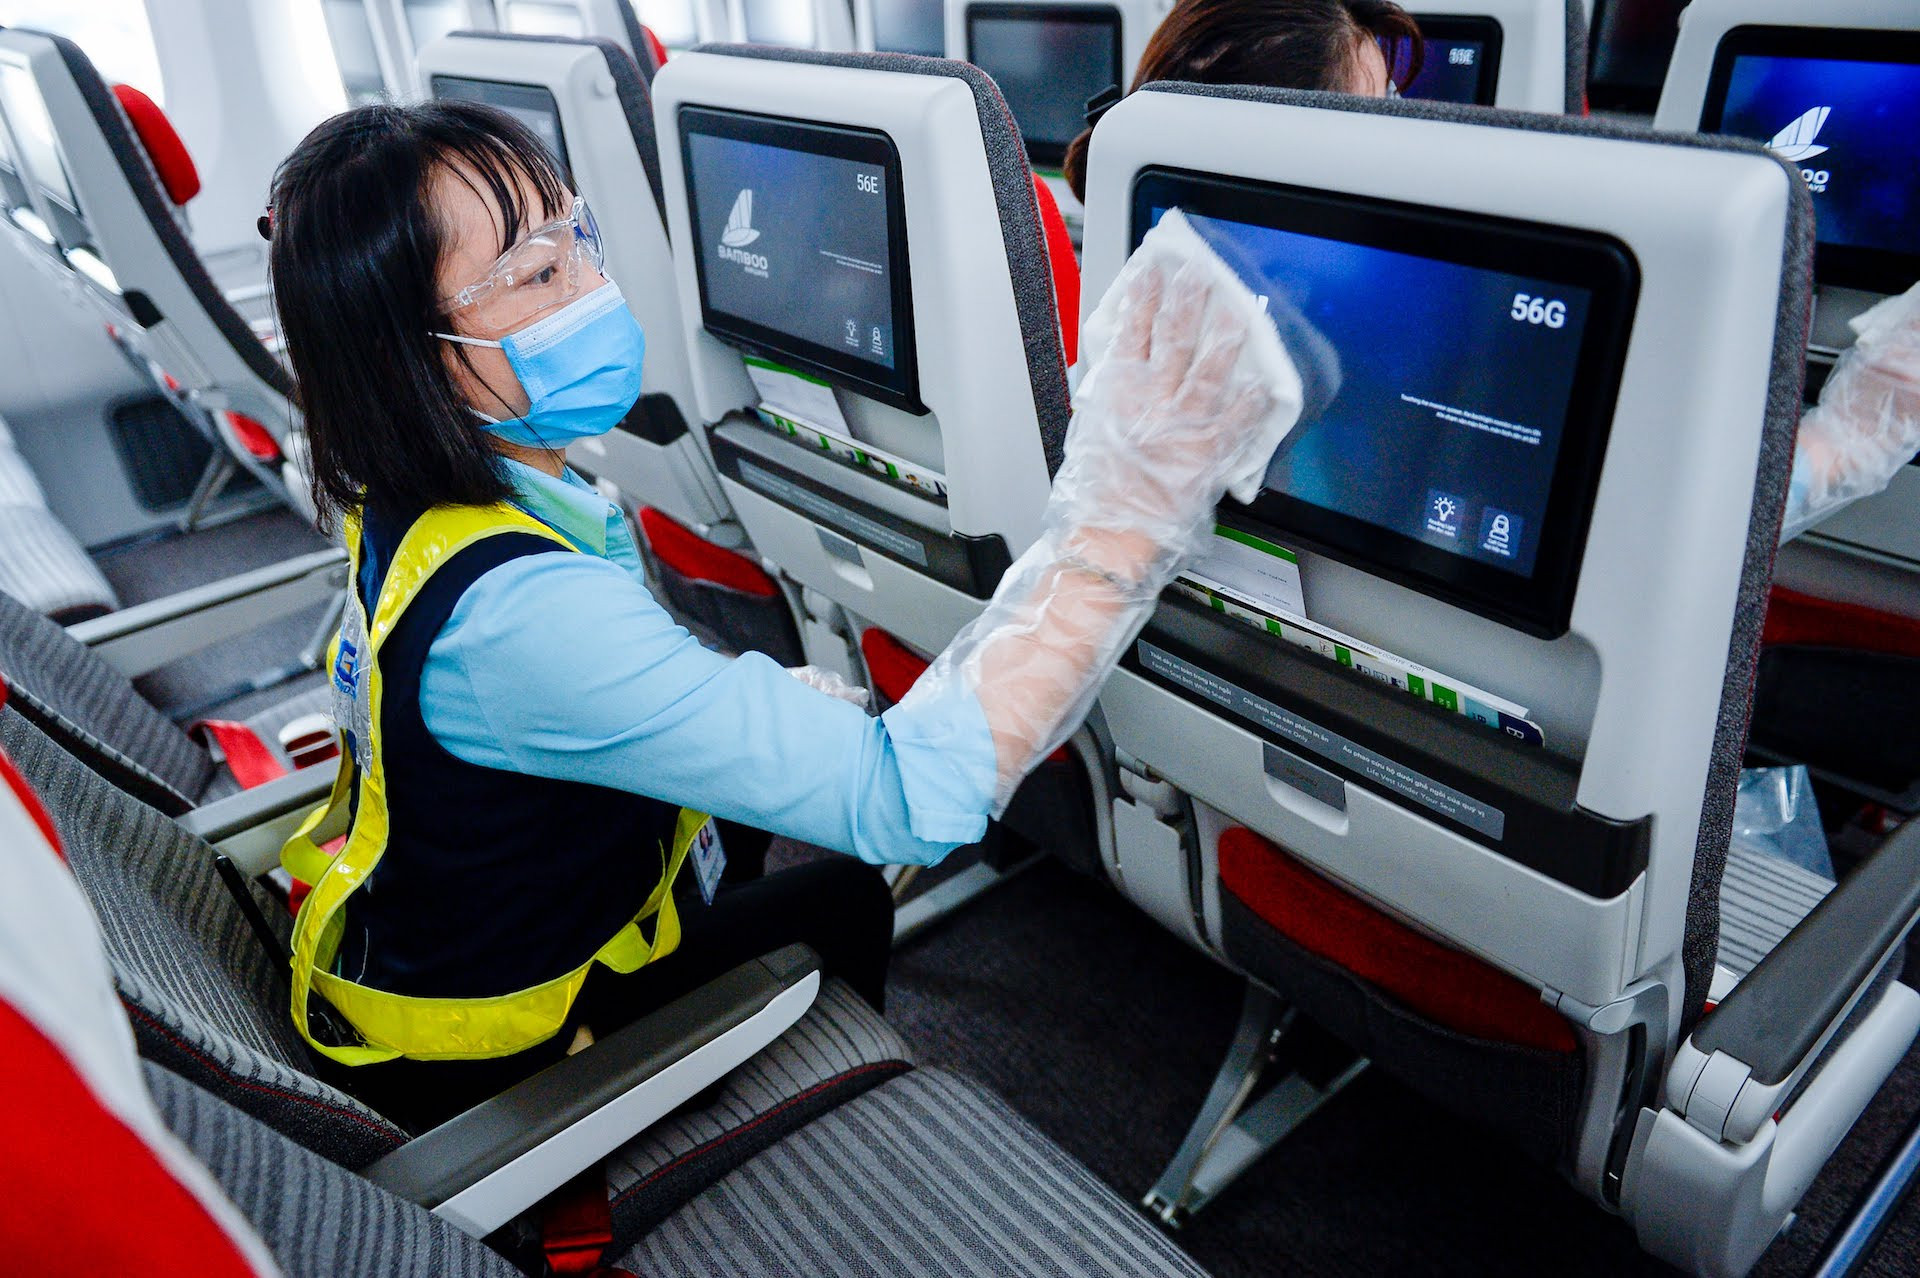 Bamboo Airways “bắt tay” Ví MoMo: tối ưu hóa phương thức thanh toán vé bay cho hành khách